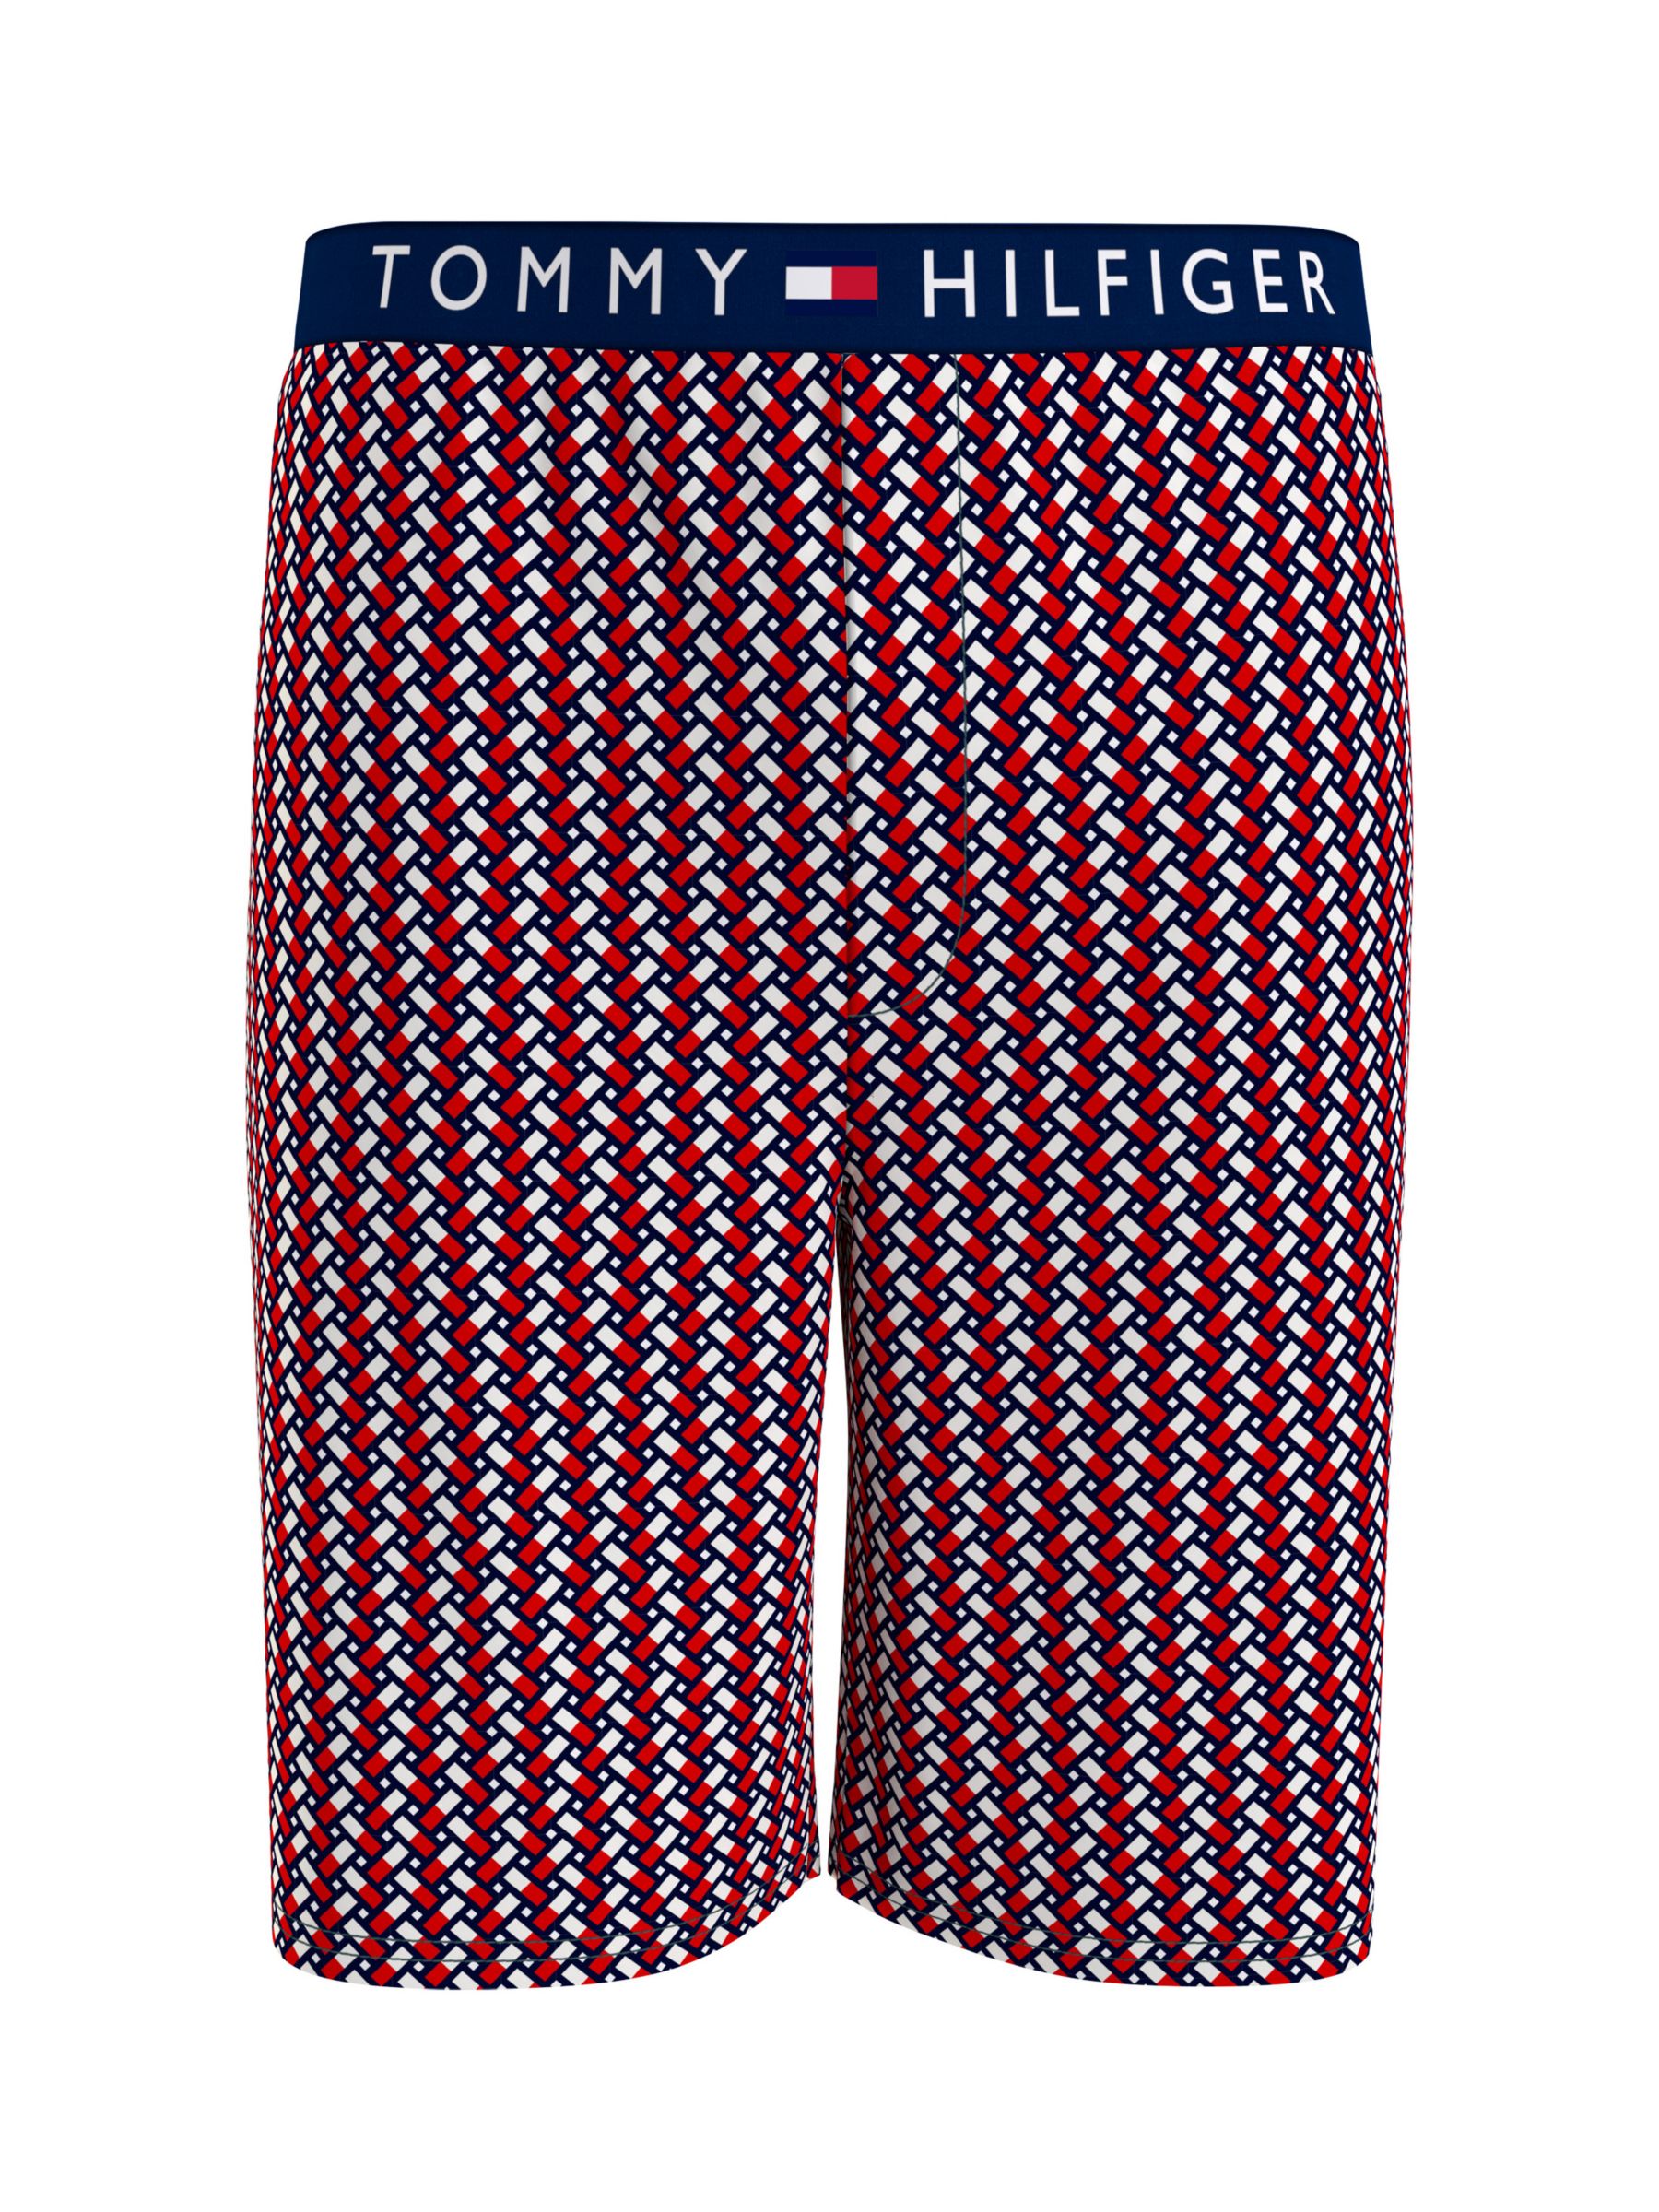 Tommy Hilfiger Logo Cotton Jersey Shorts, Coastal Navy/Multi, S